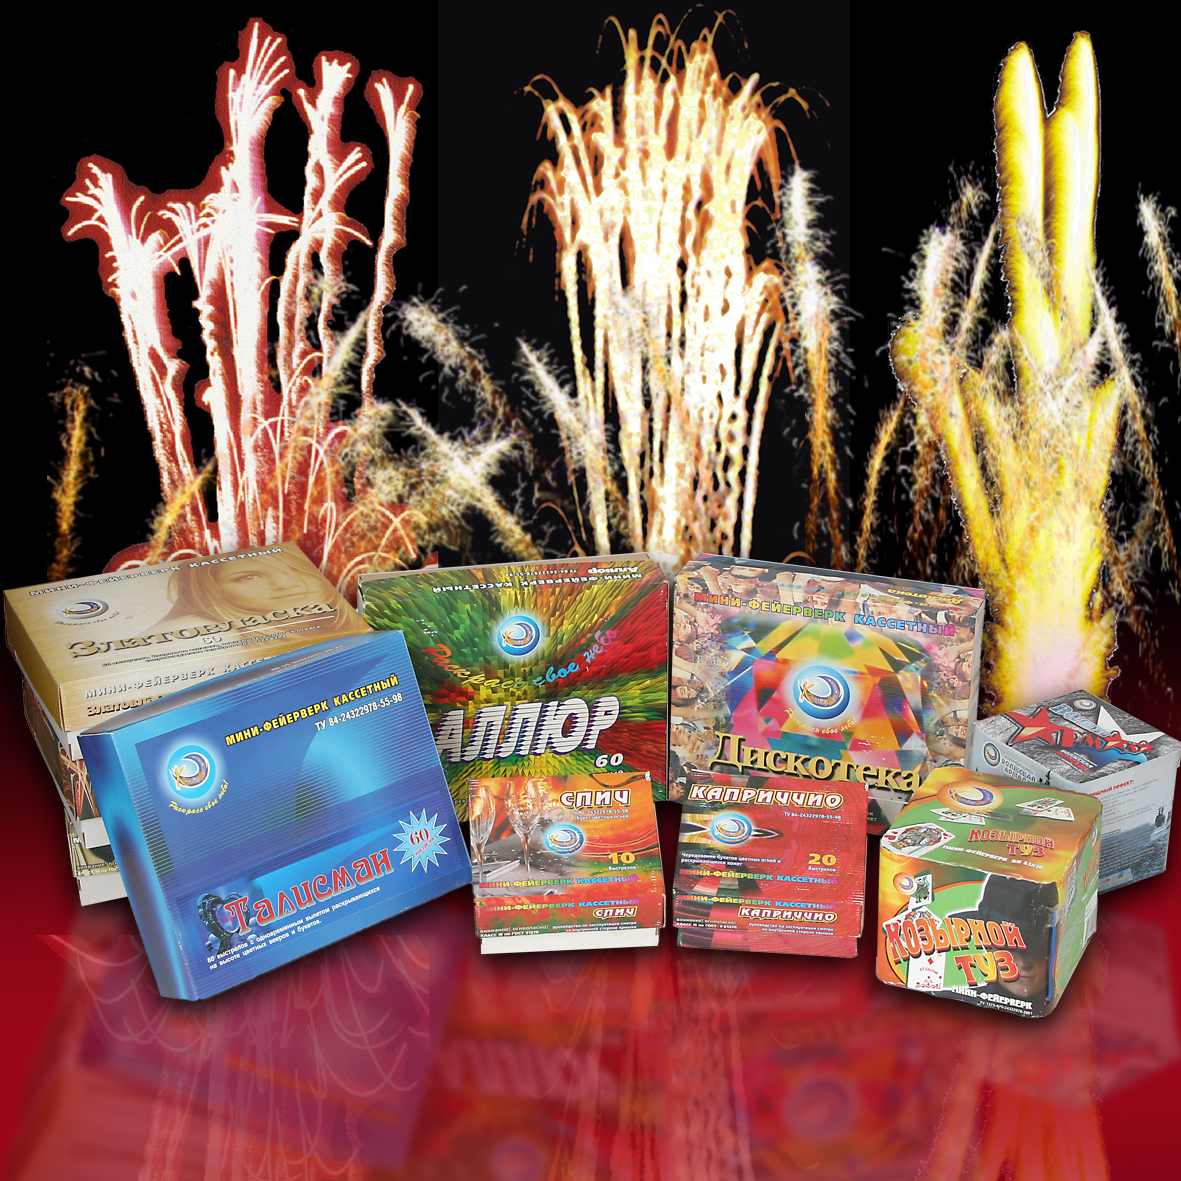 Cassette mini-fireworks